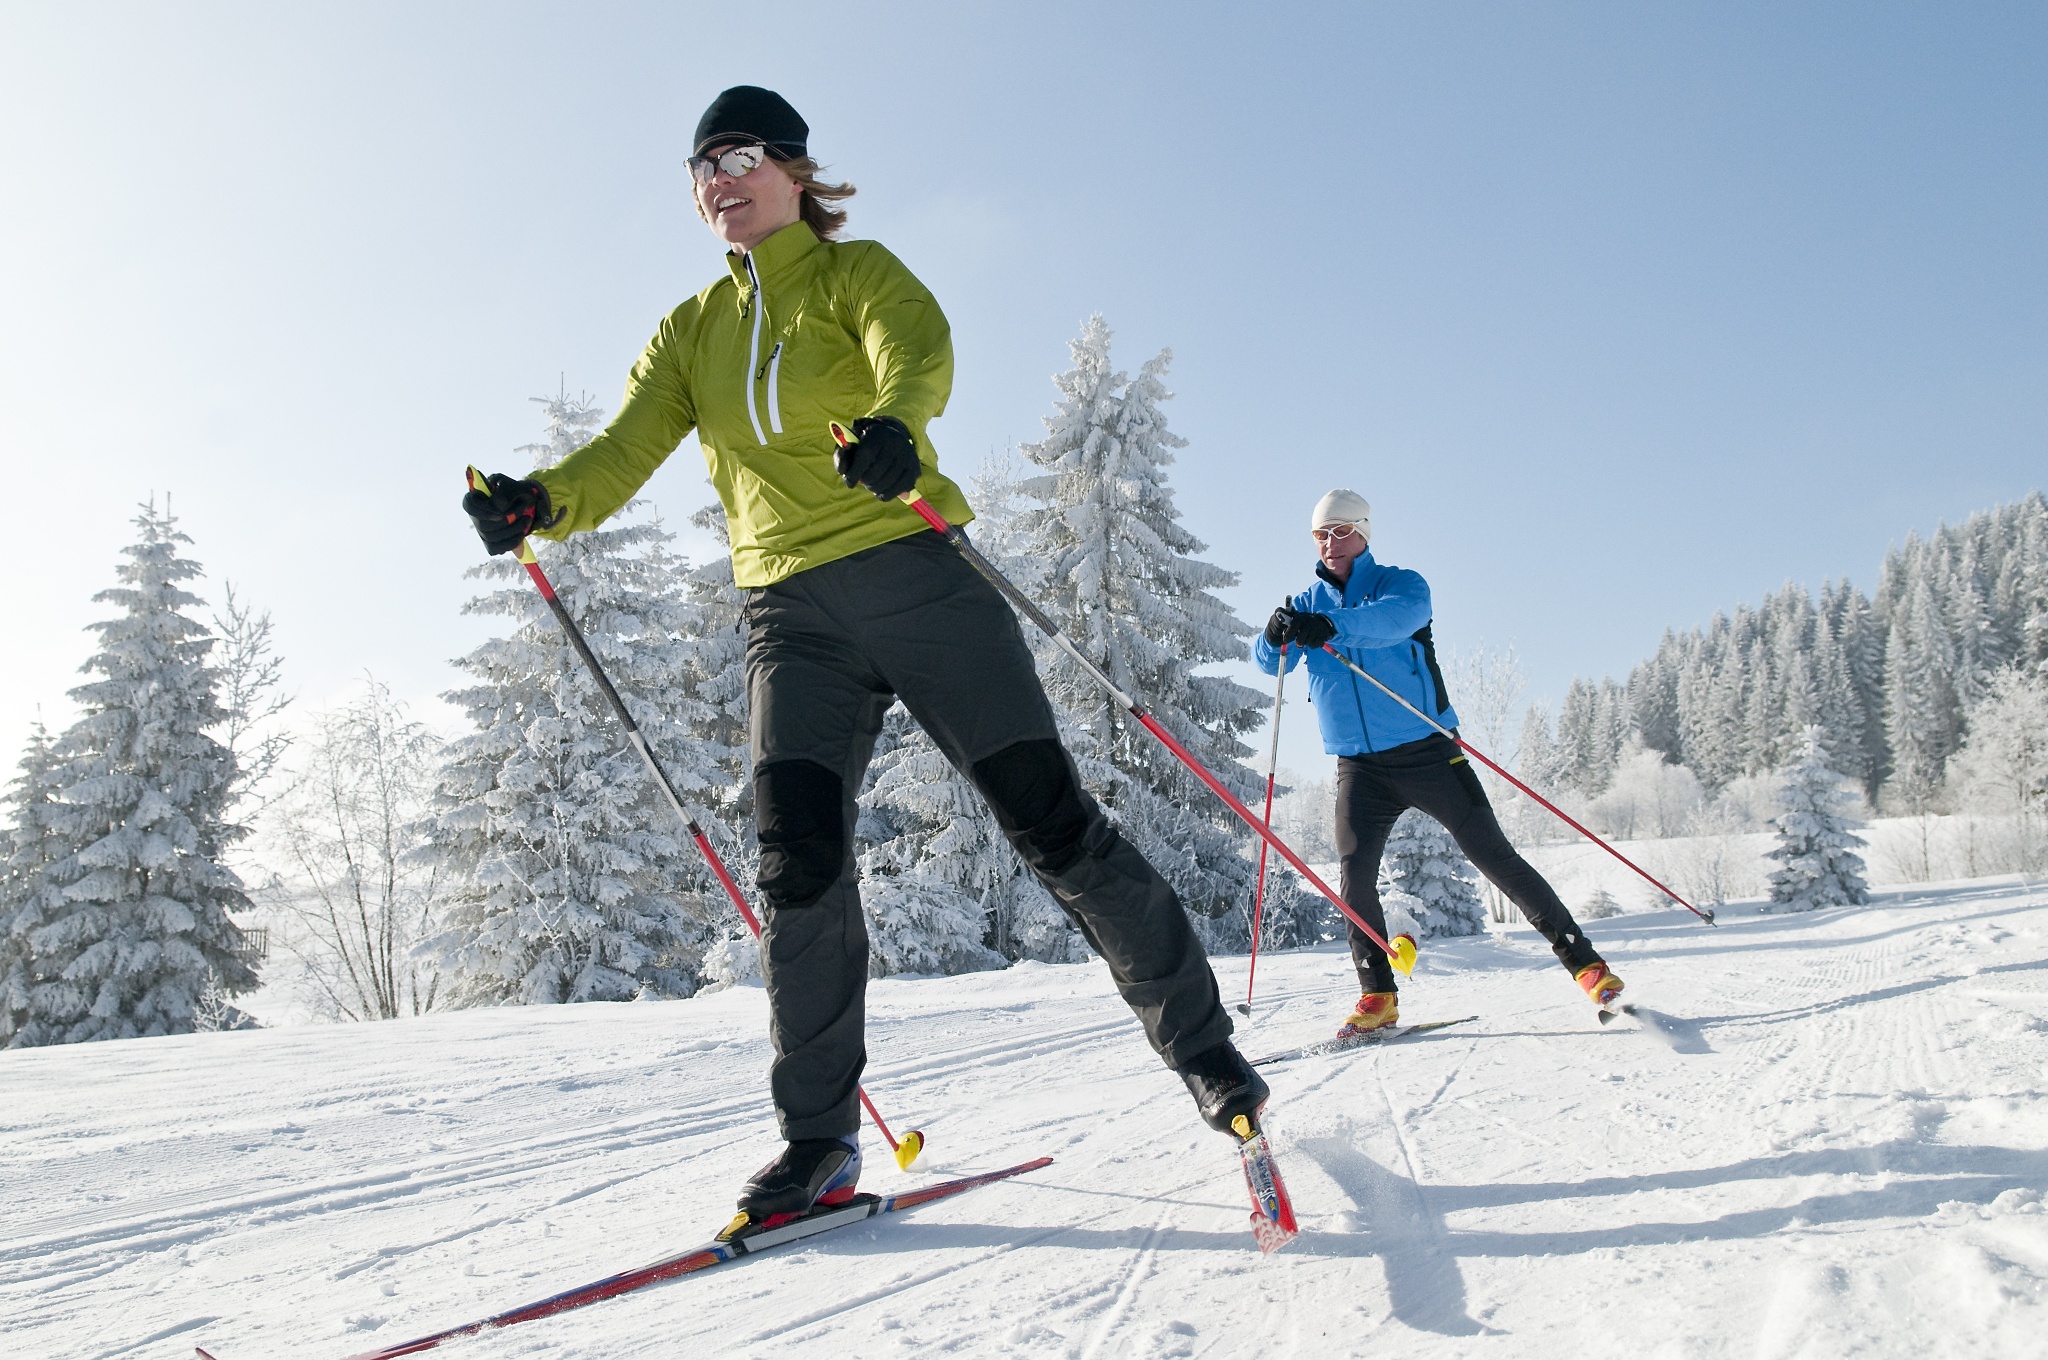 Ski de. Кататься на лыжах. Занятия на лыжах. Люди катаются на лыжах. Катания на беговых лыжах.